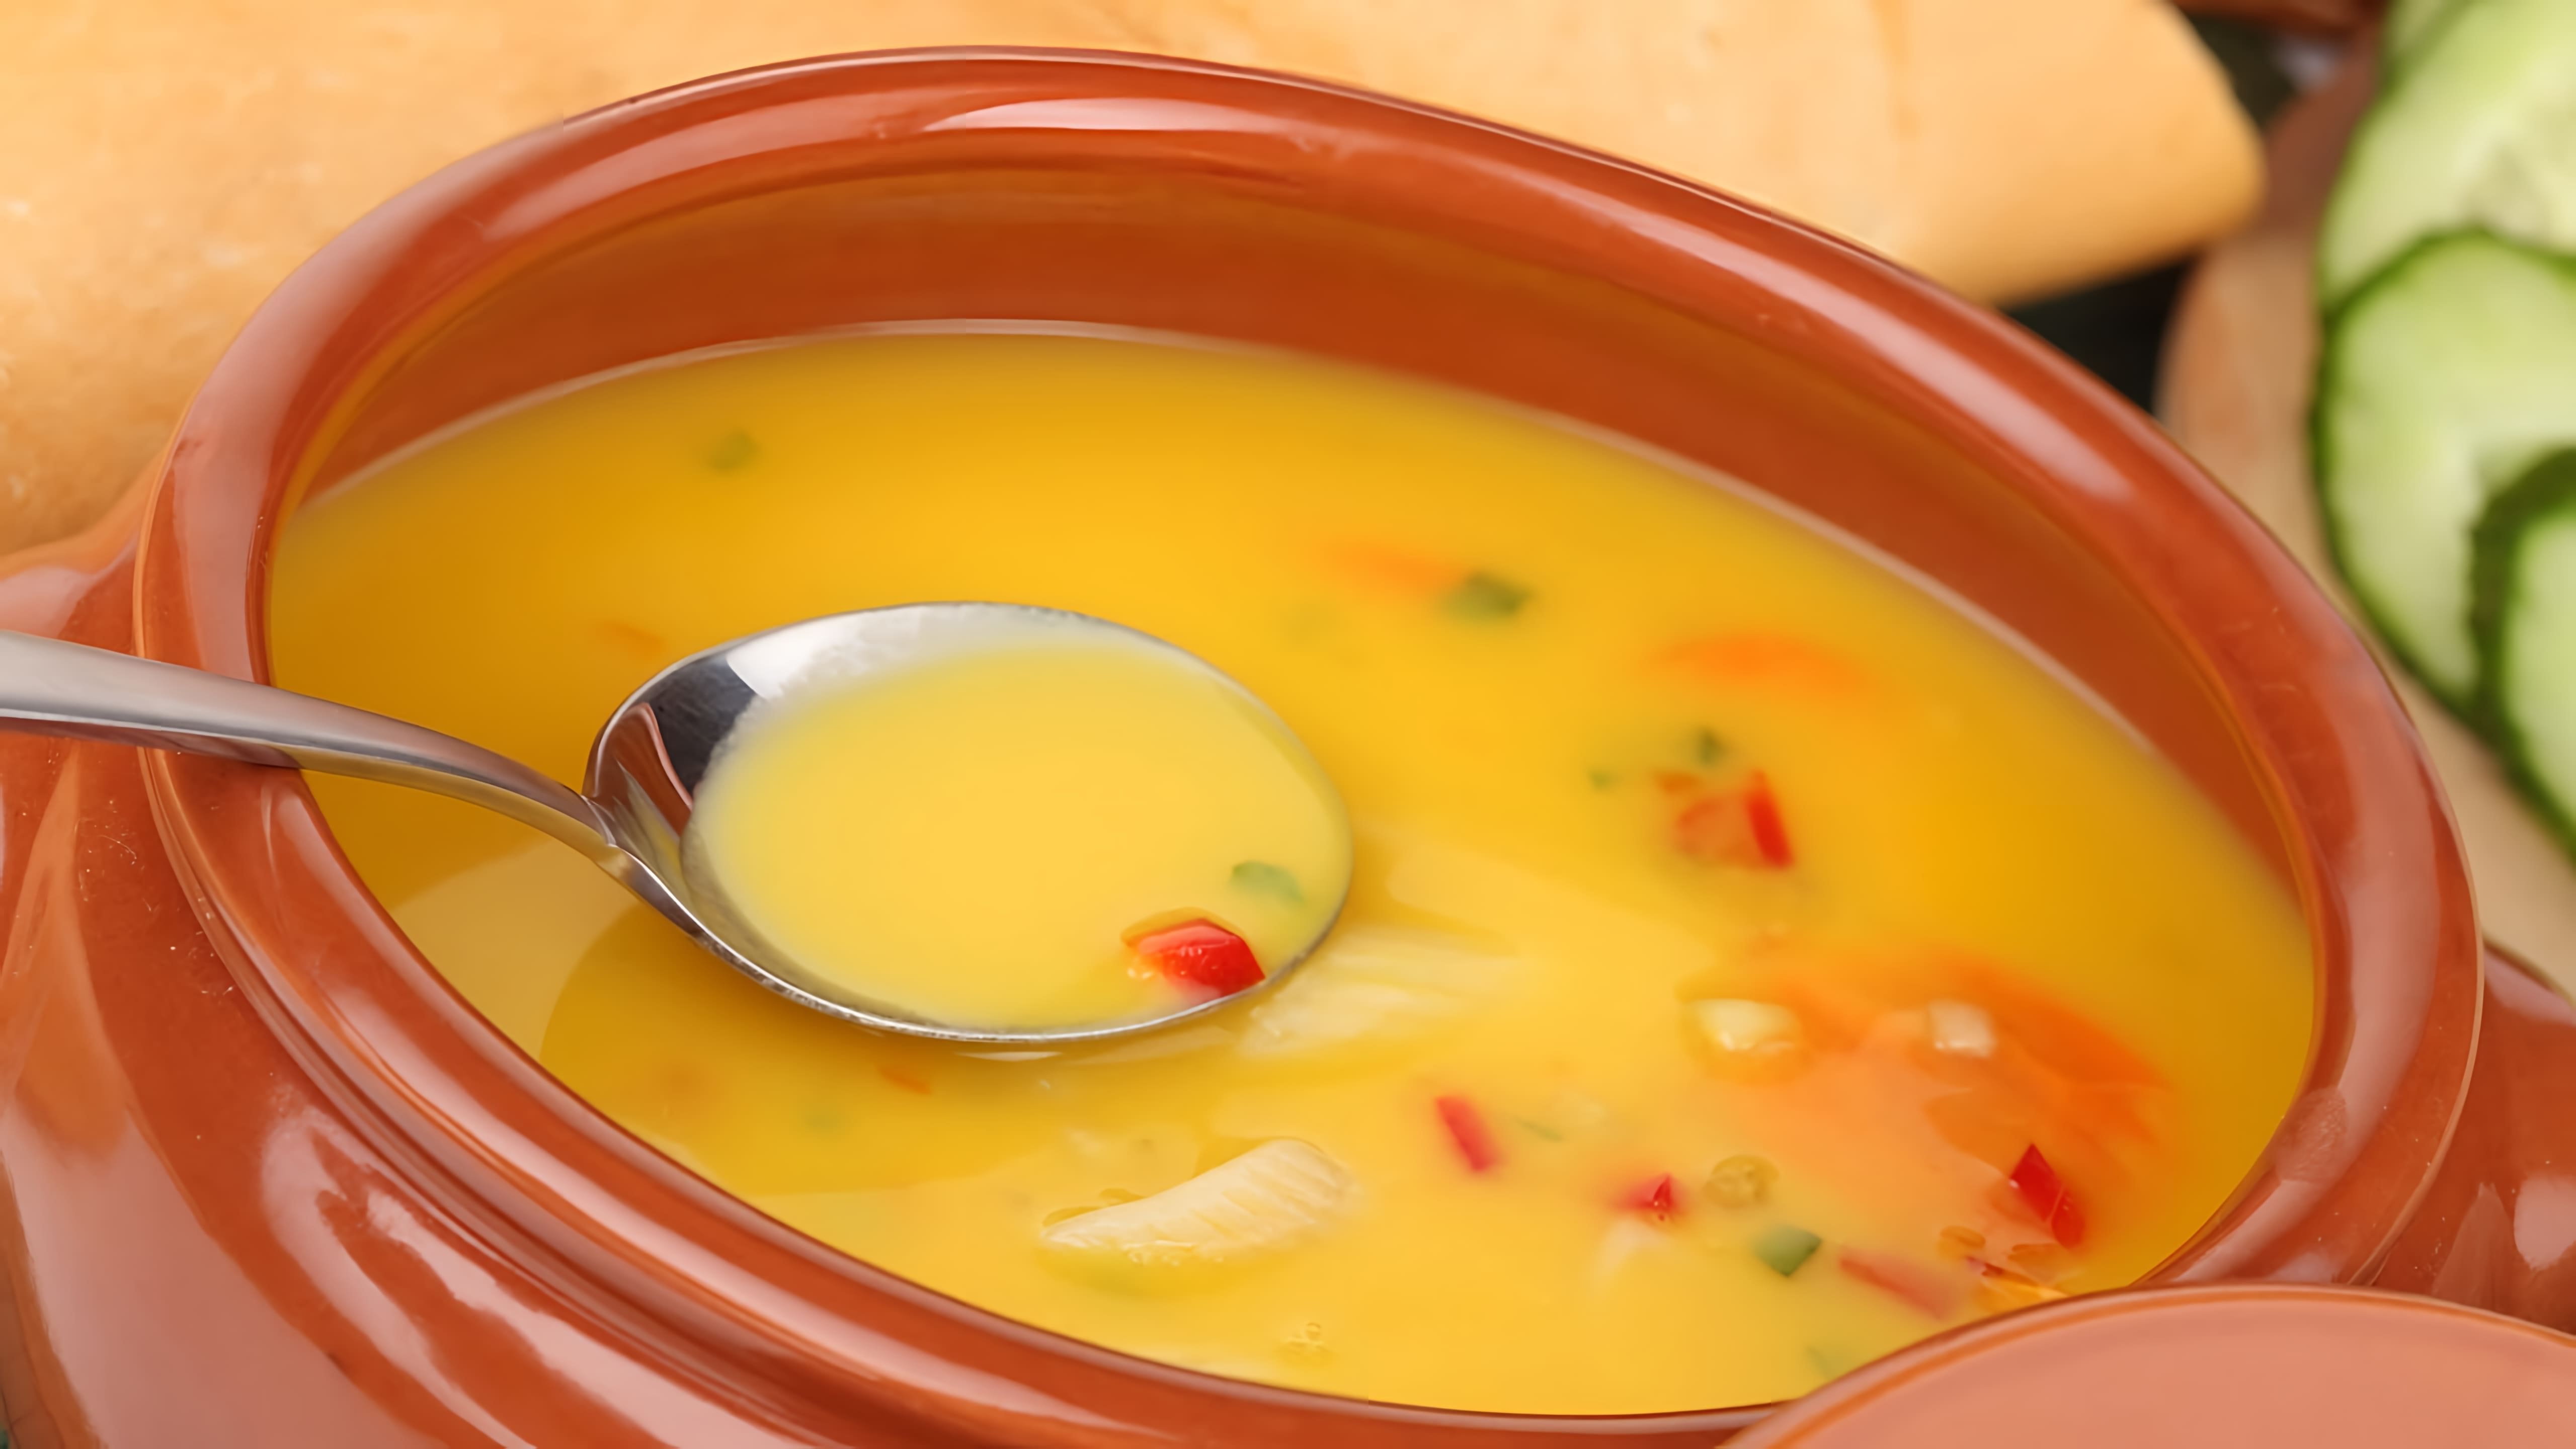 В этом видео демонстрируется рецепт приготовления легкого диетического супа "Здоровье" с курицей и овощами